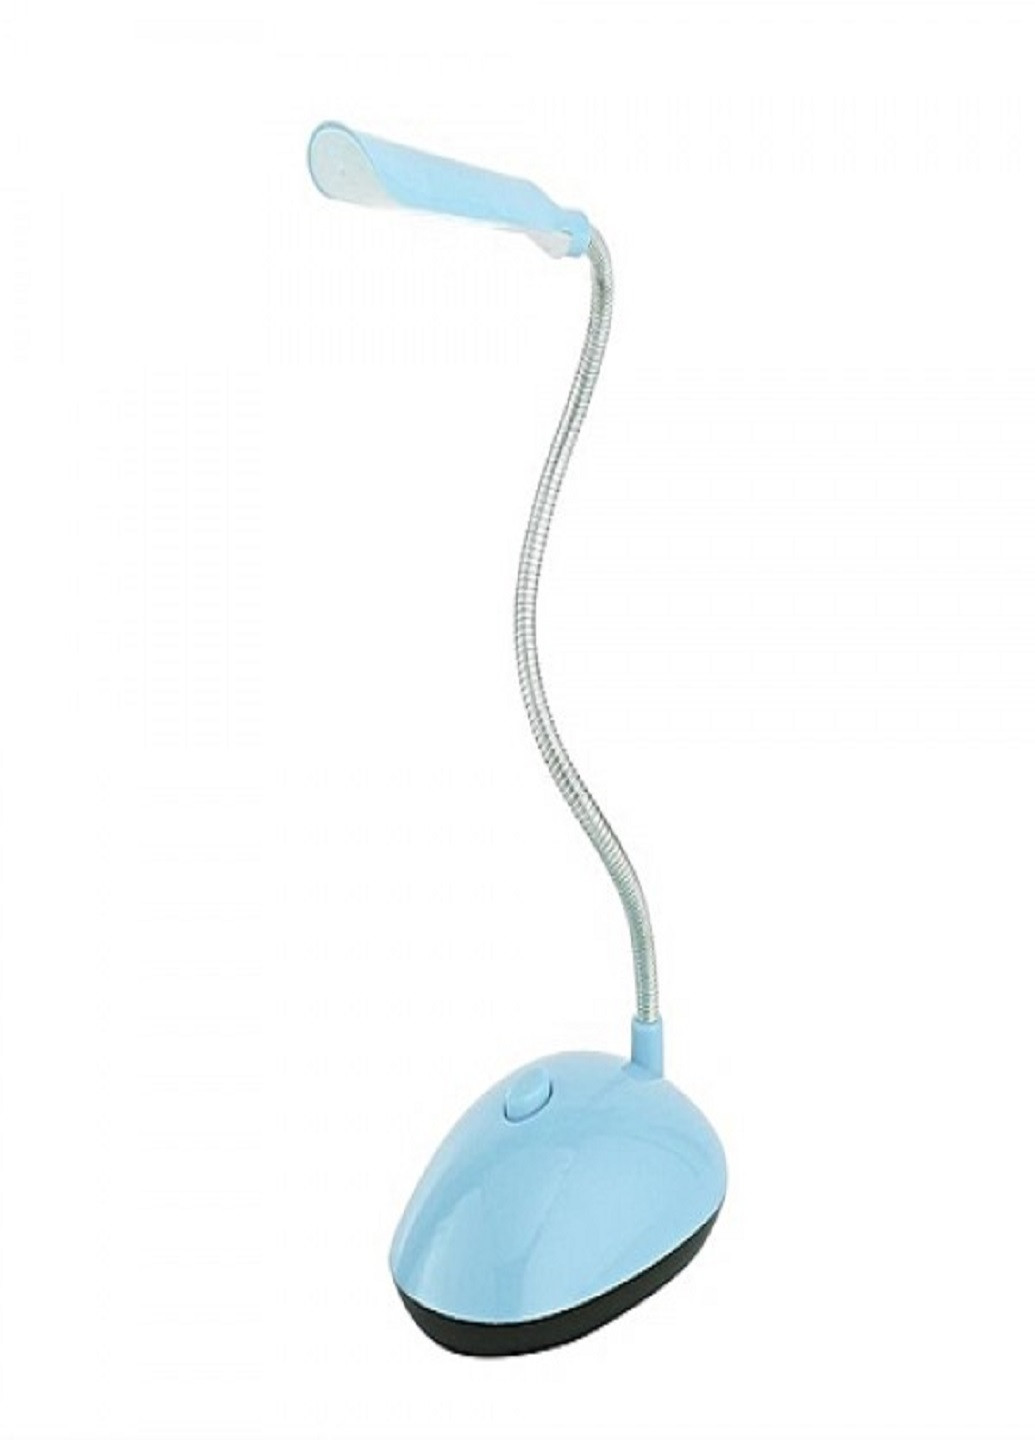 Настольная лампа BL-7188 светильник LED Голубая VTech (253319211)